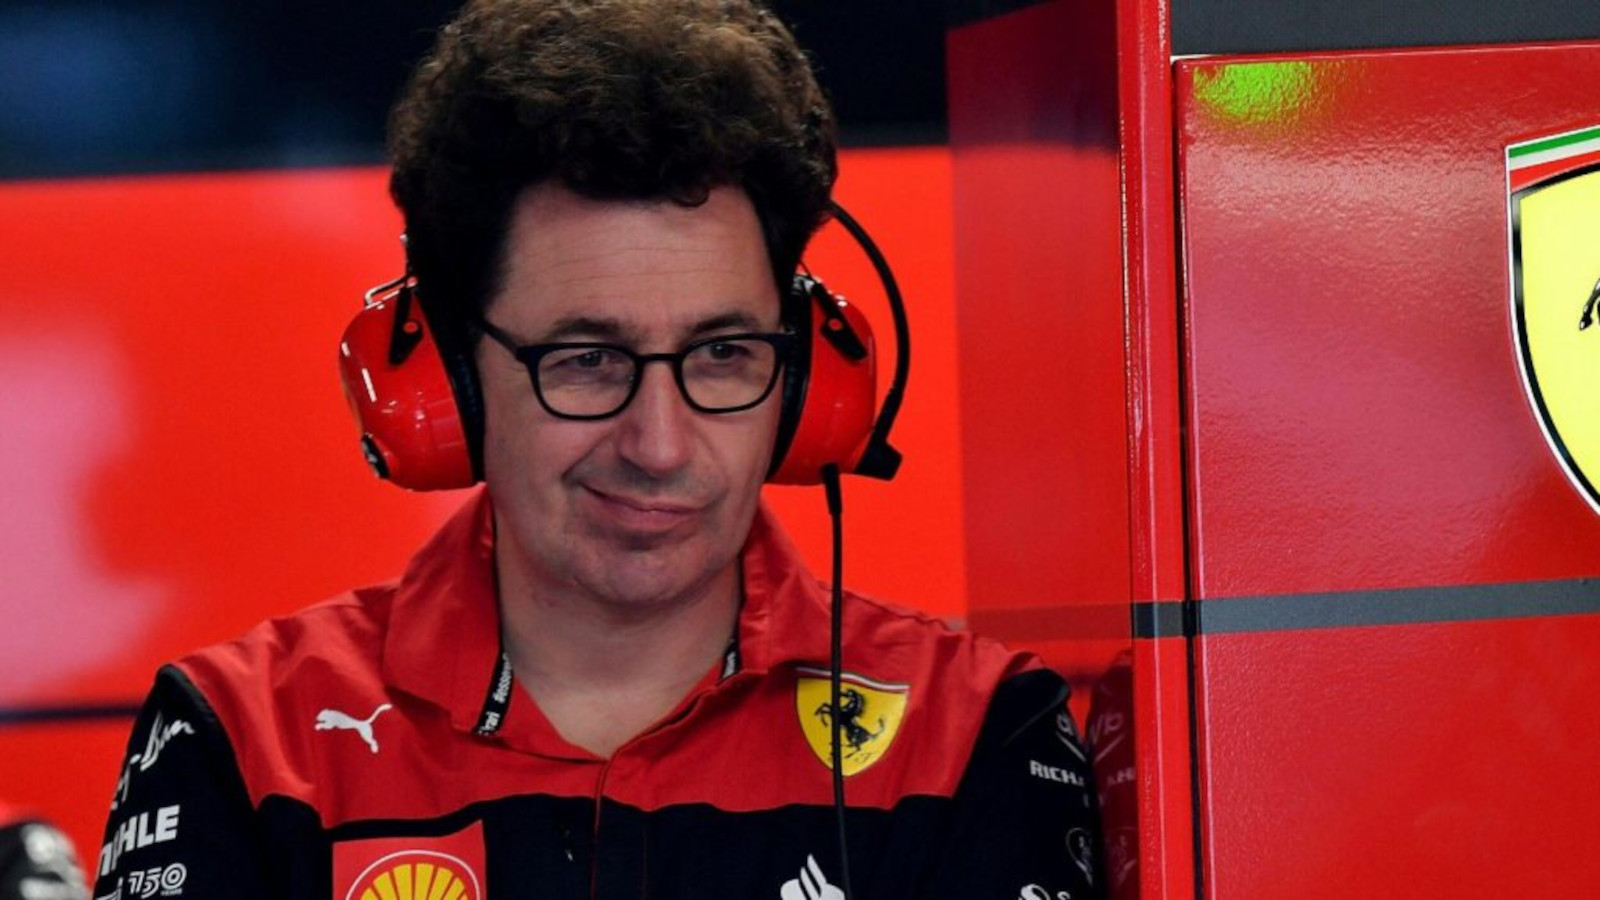 El director del equipo Ferrari, Mattia Pinotto, está en el garaje con los auriculares puestos y una expresión cómica en el rostro.  Montréal junio 2022